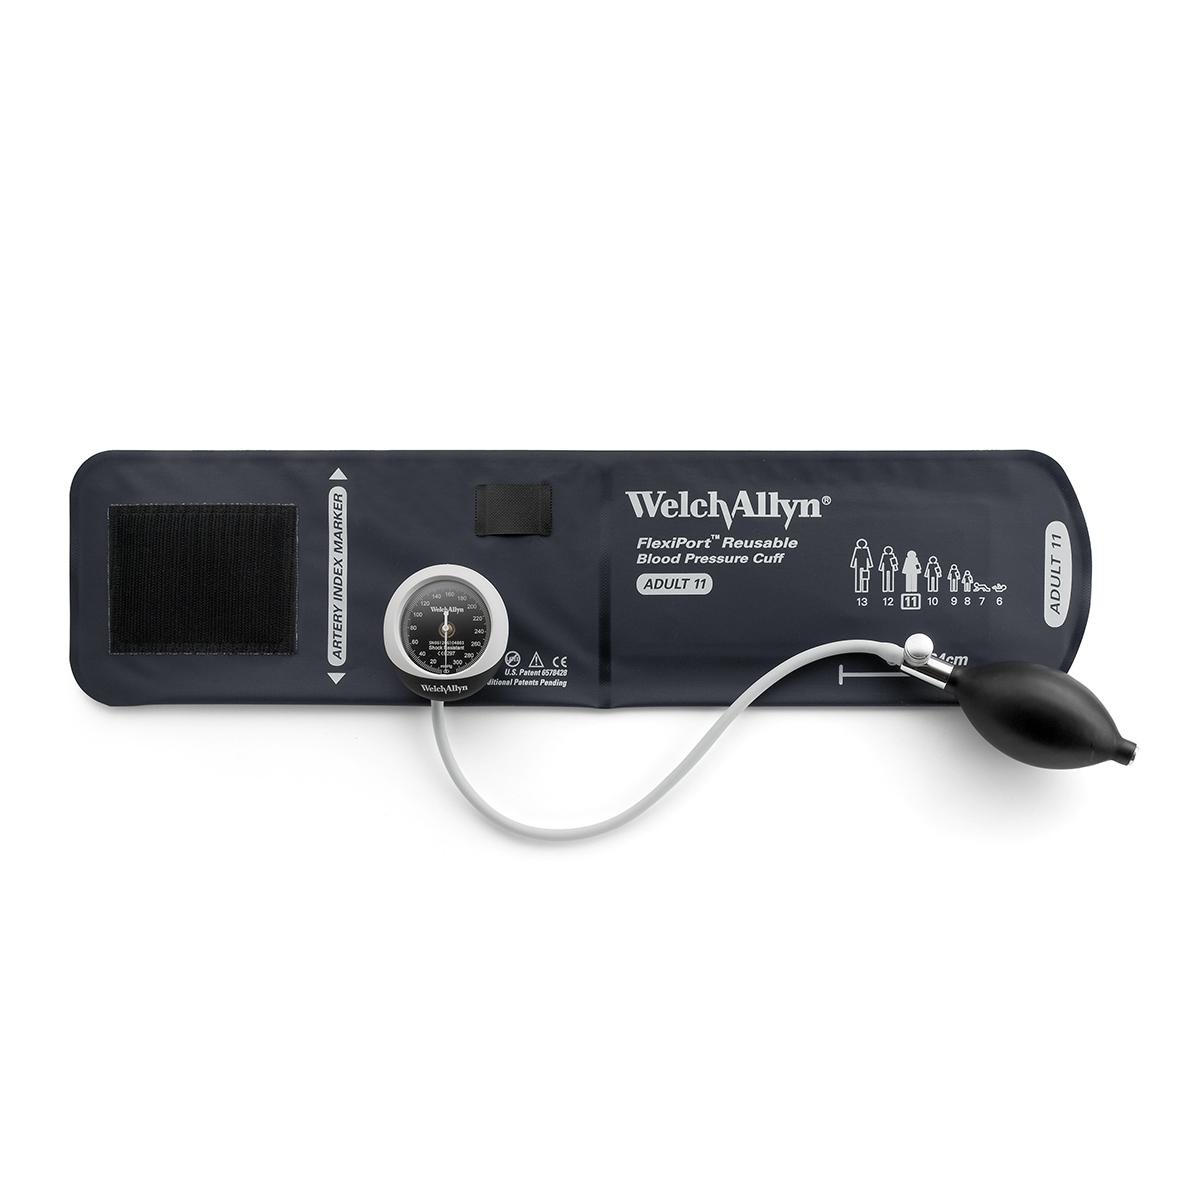 成人用の再使用可能な FlexiPort 血圧カフに装着された Welch Allyn デュラショック DS45 血圧計。